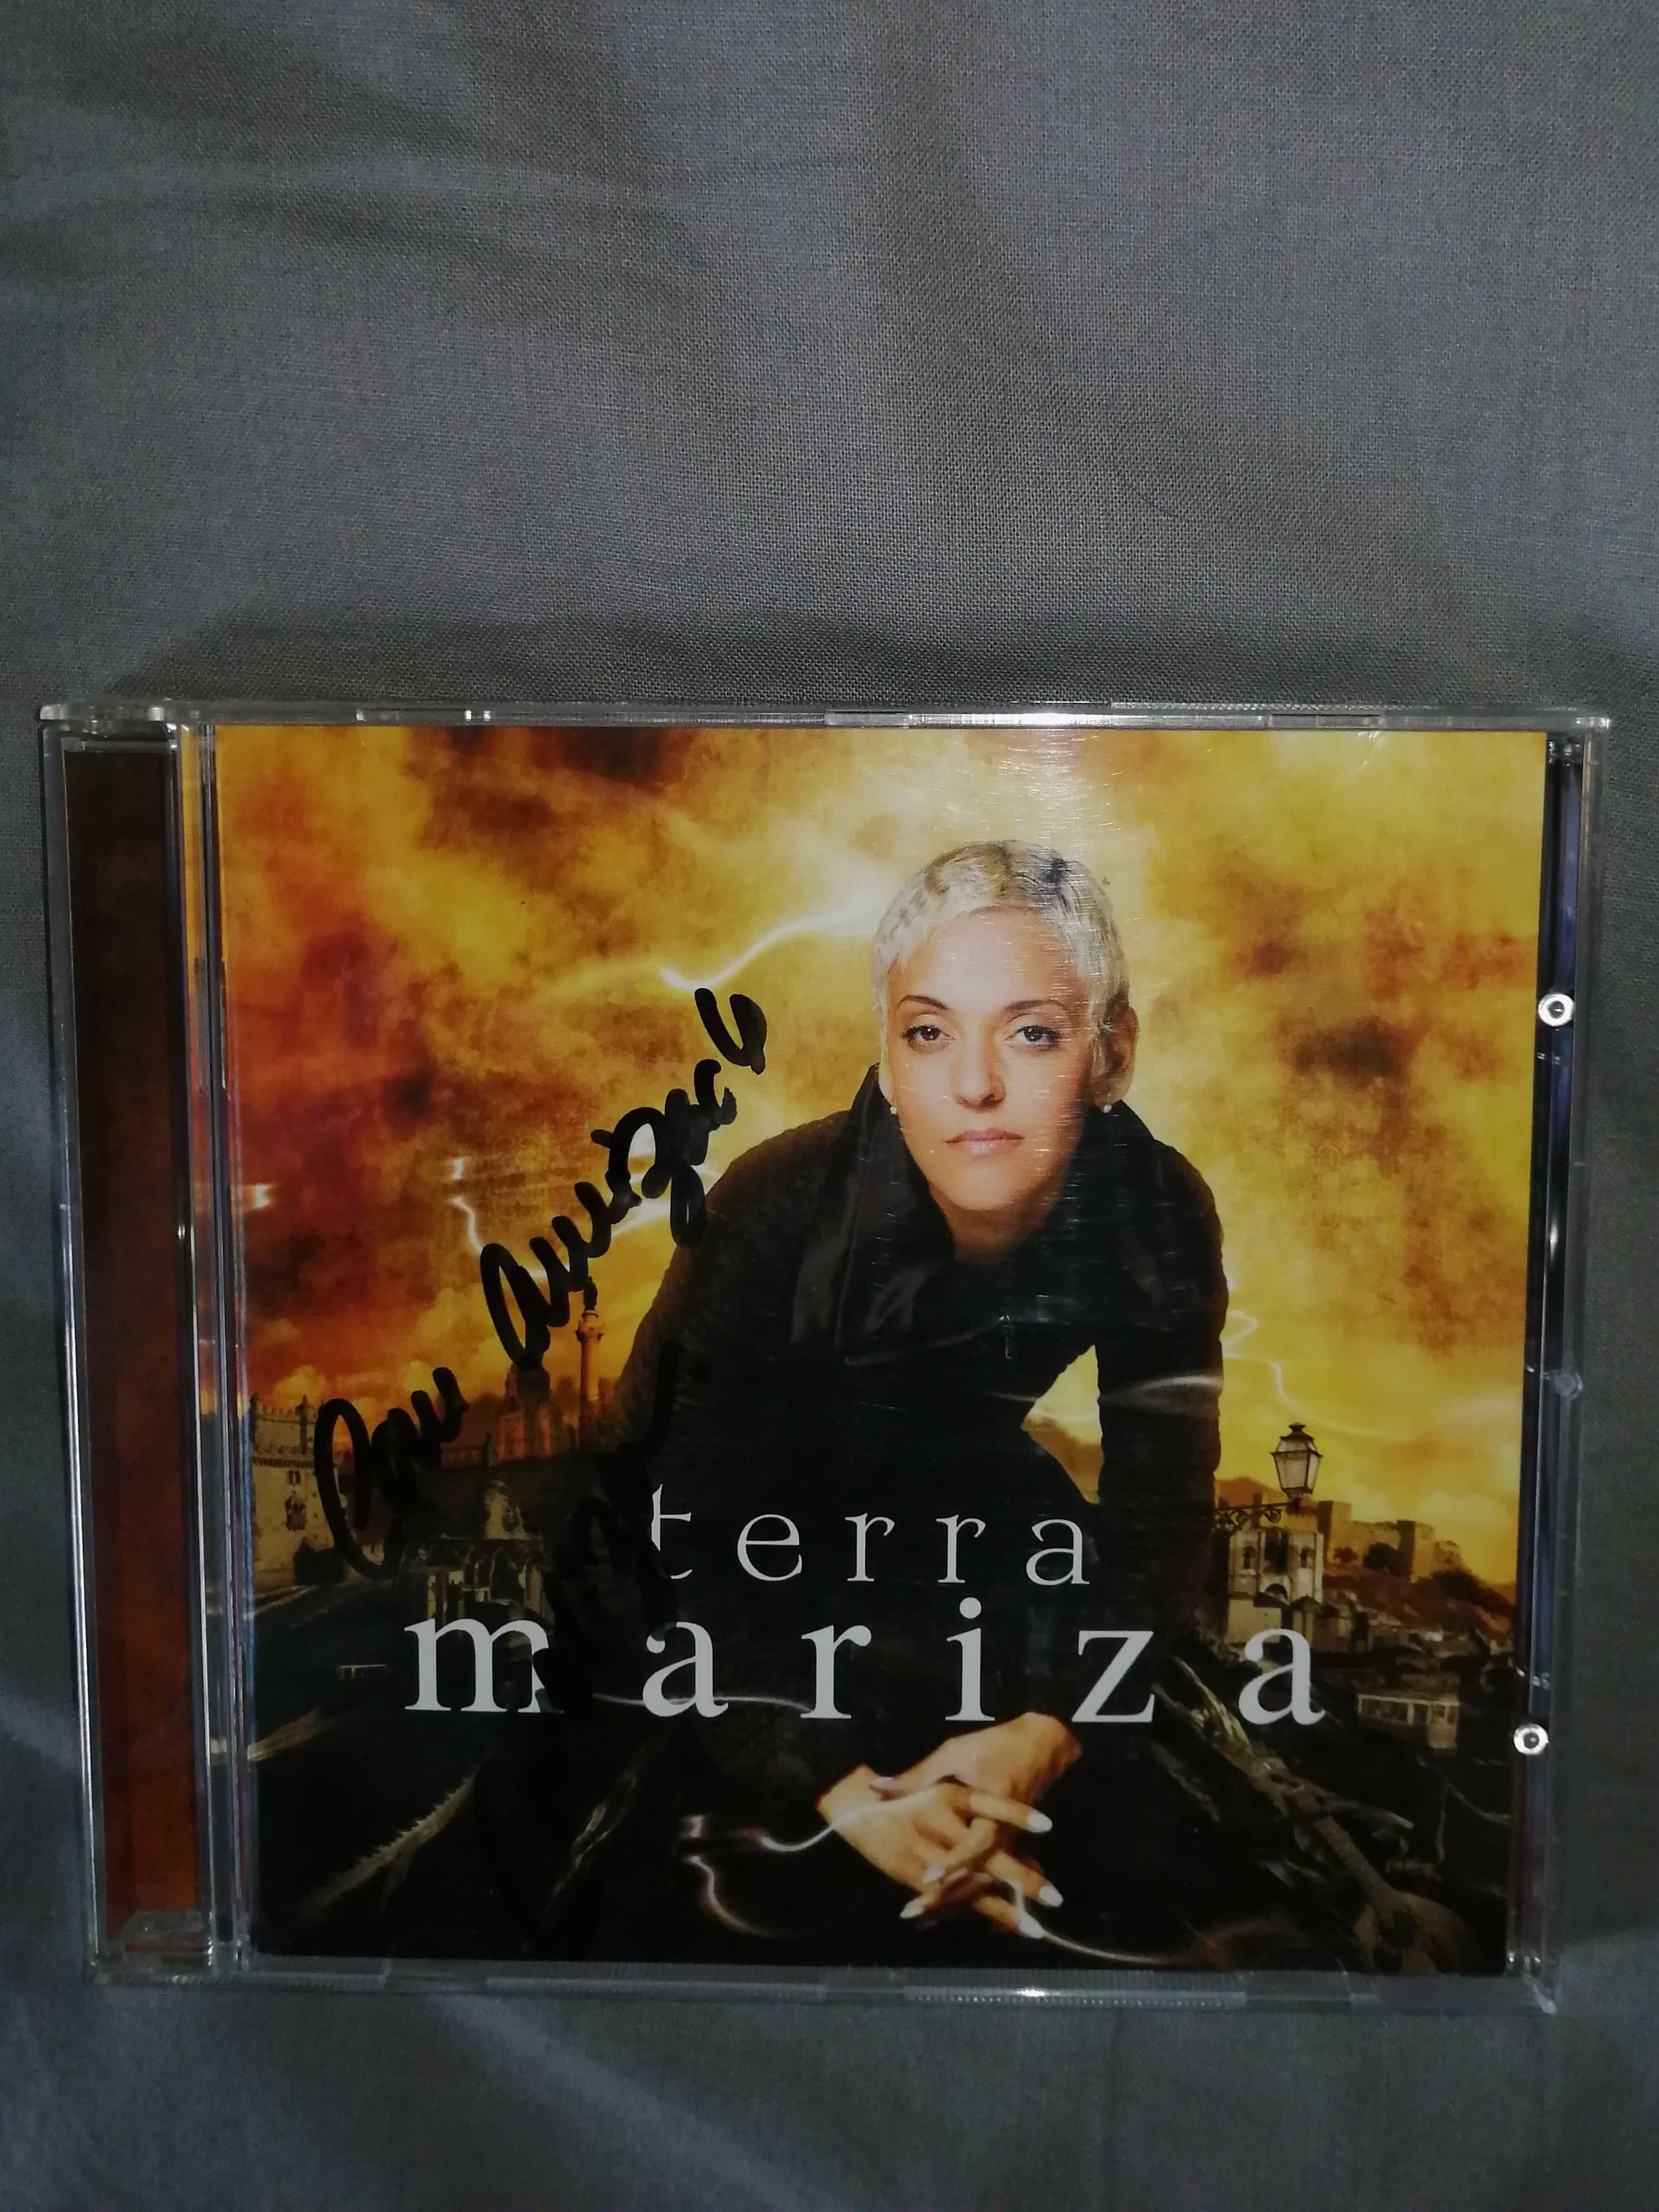 Mariza - Terra (autografado)